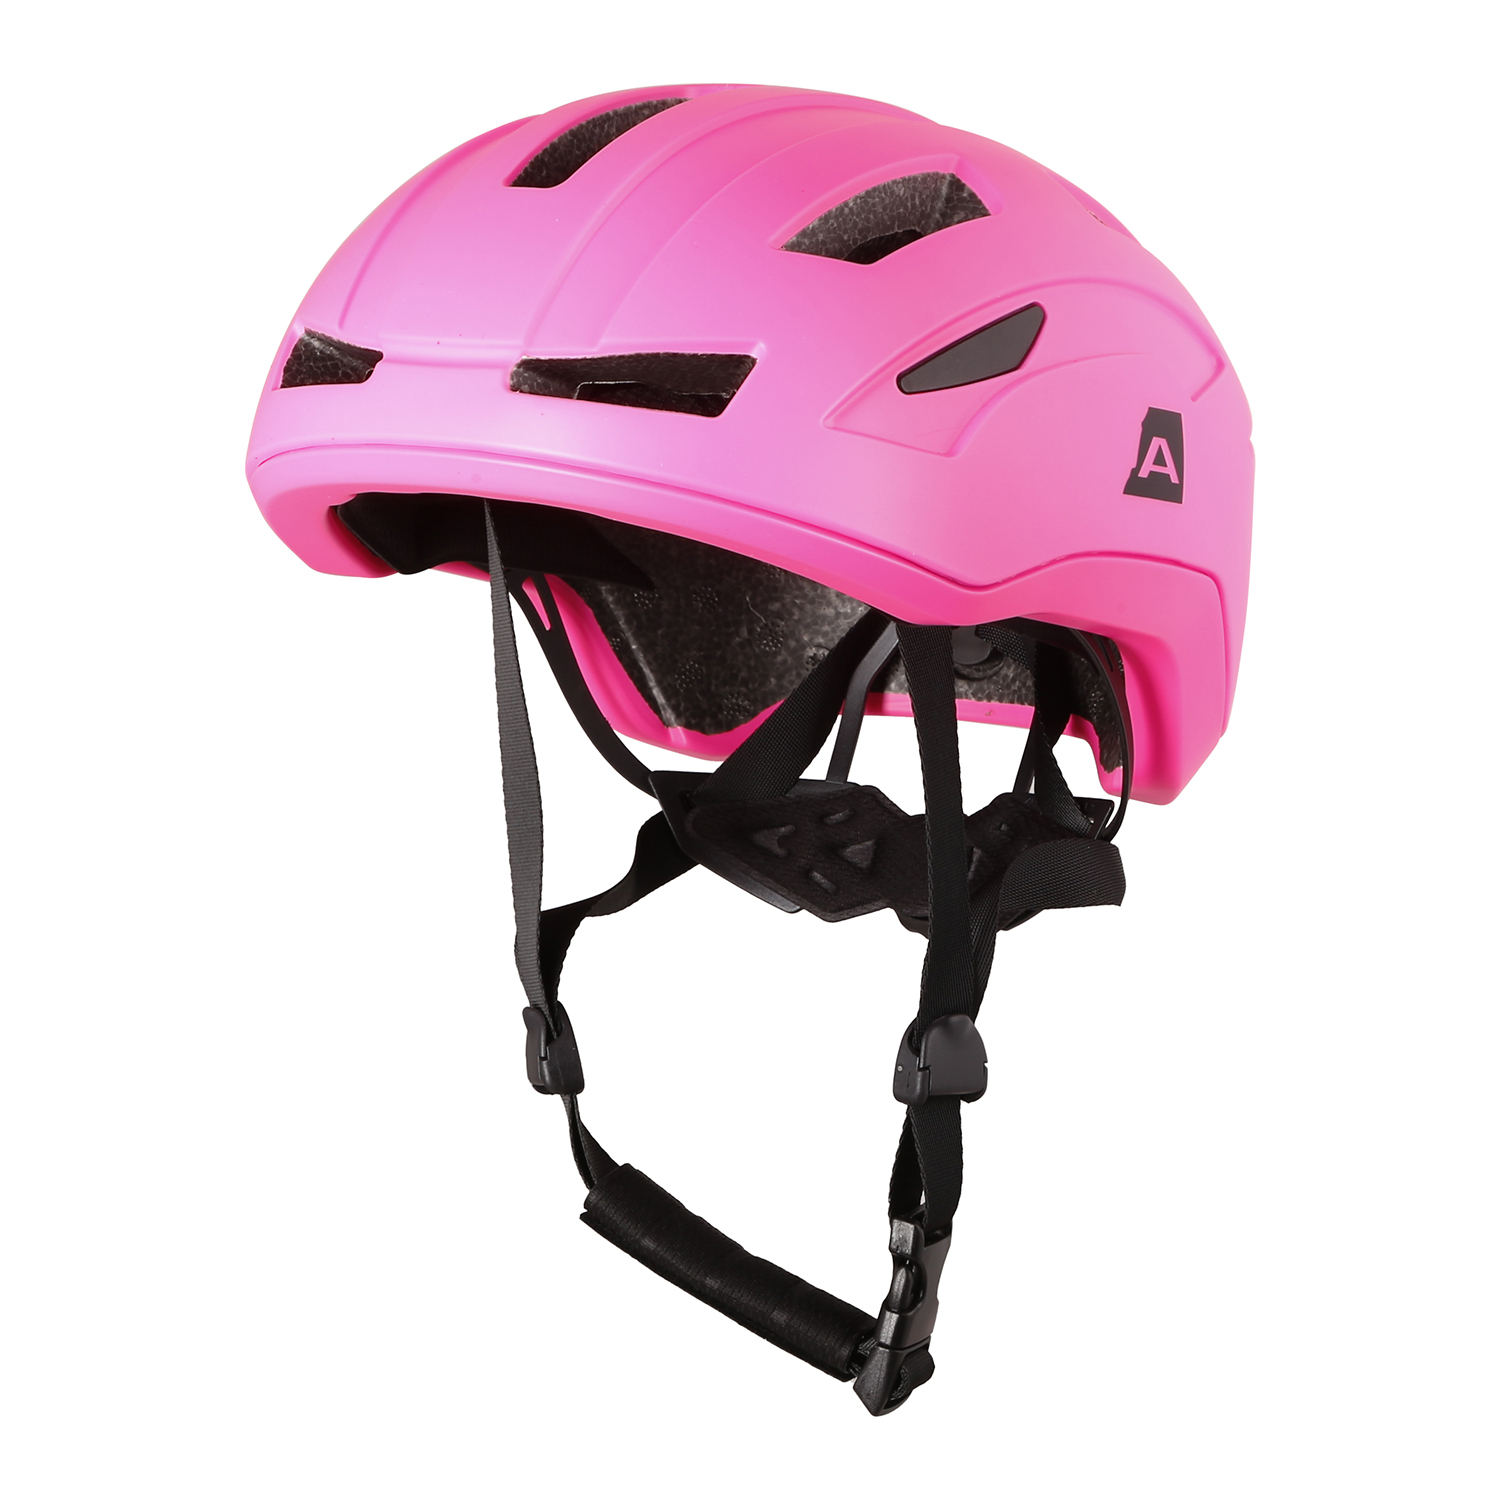 Kids Cycling Helmet Ap 52-56 Cm AP OWERO Pink Glo